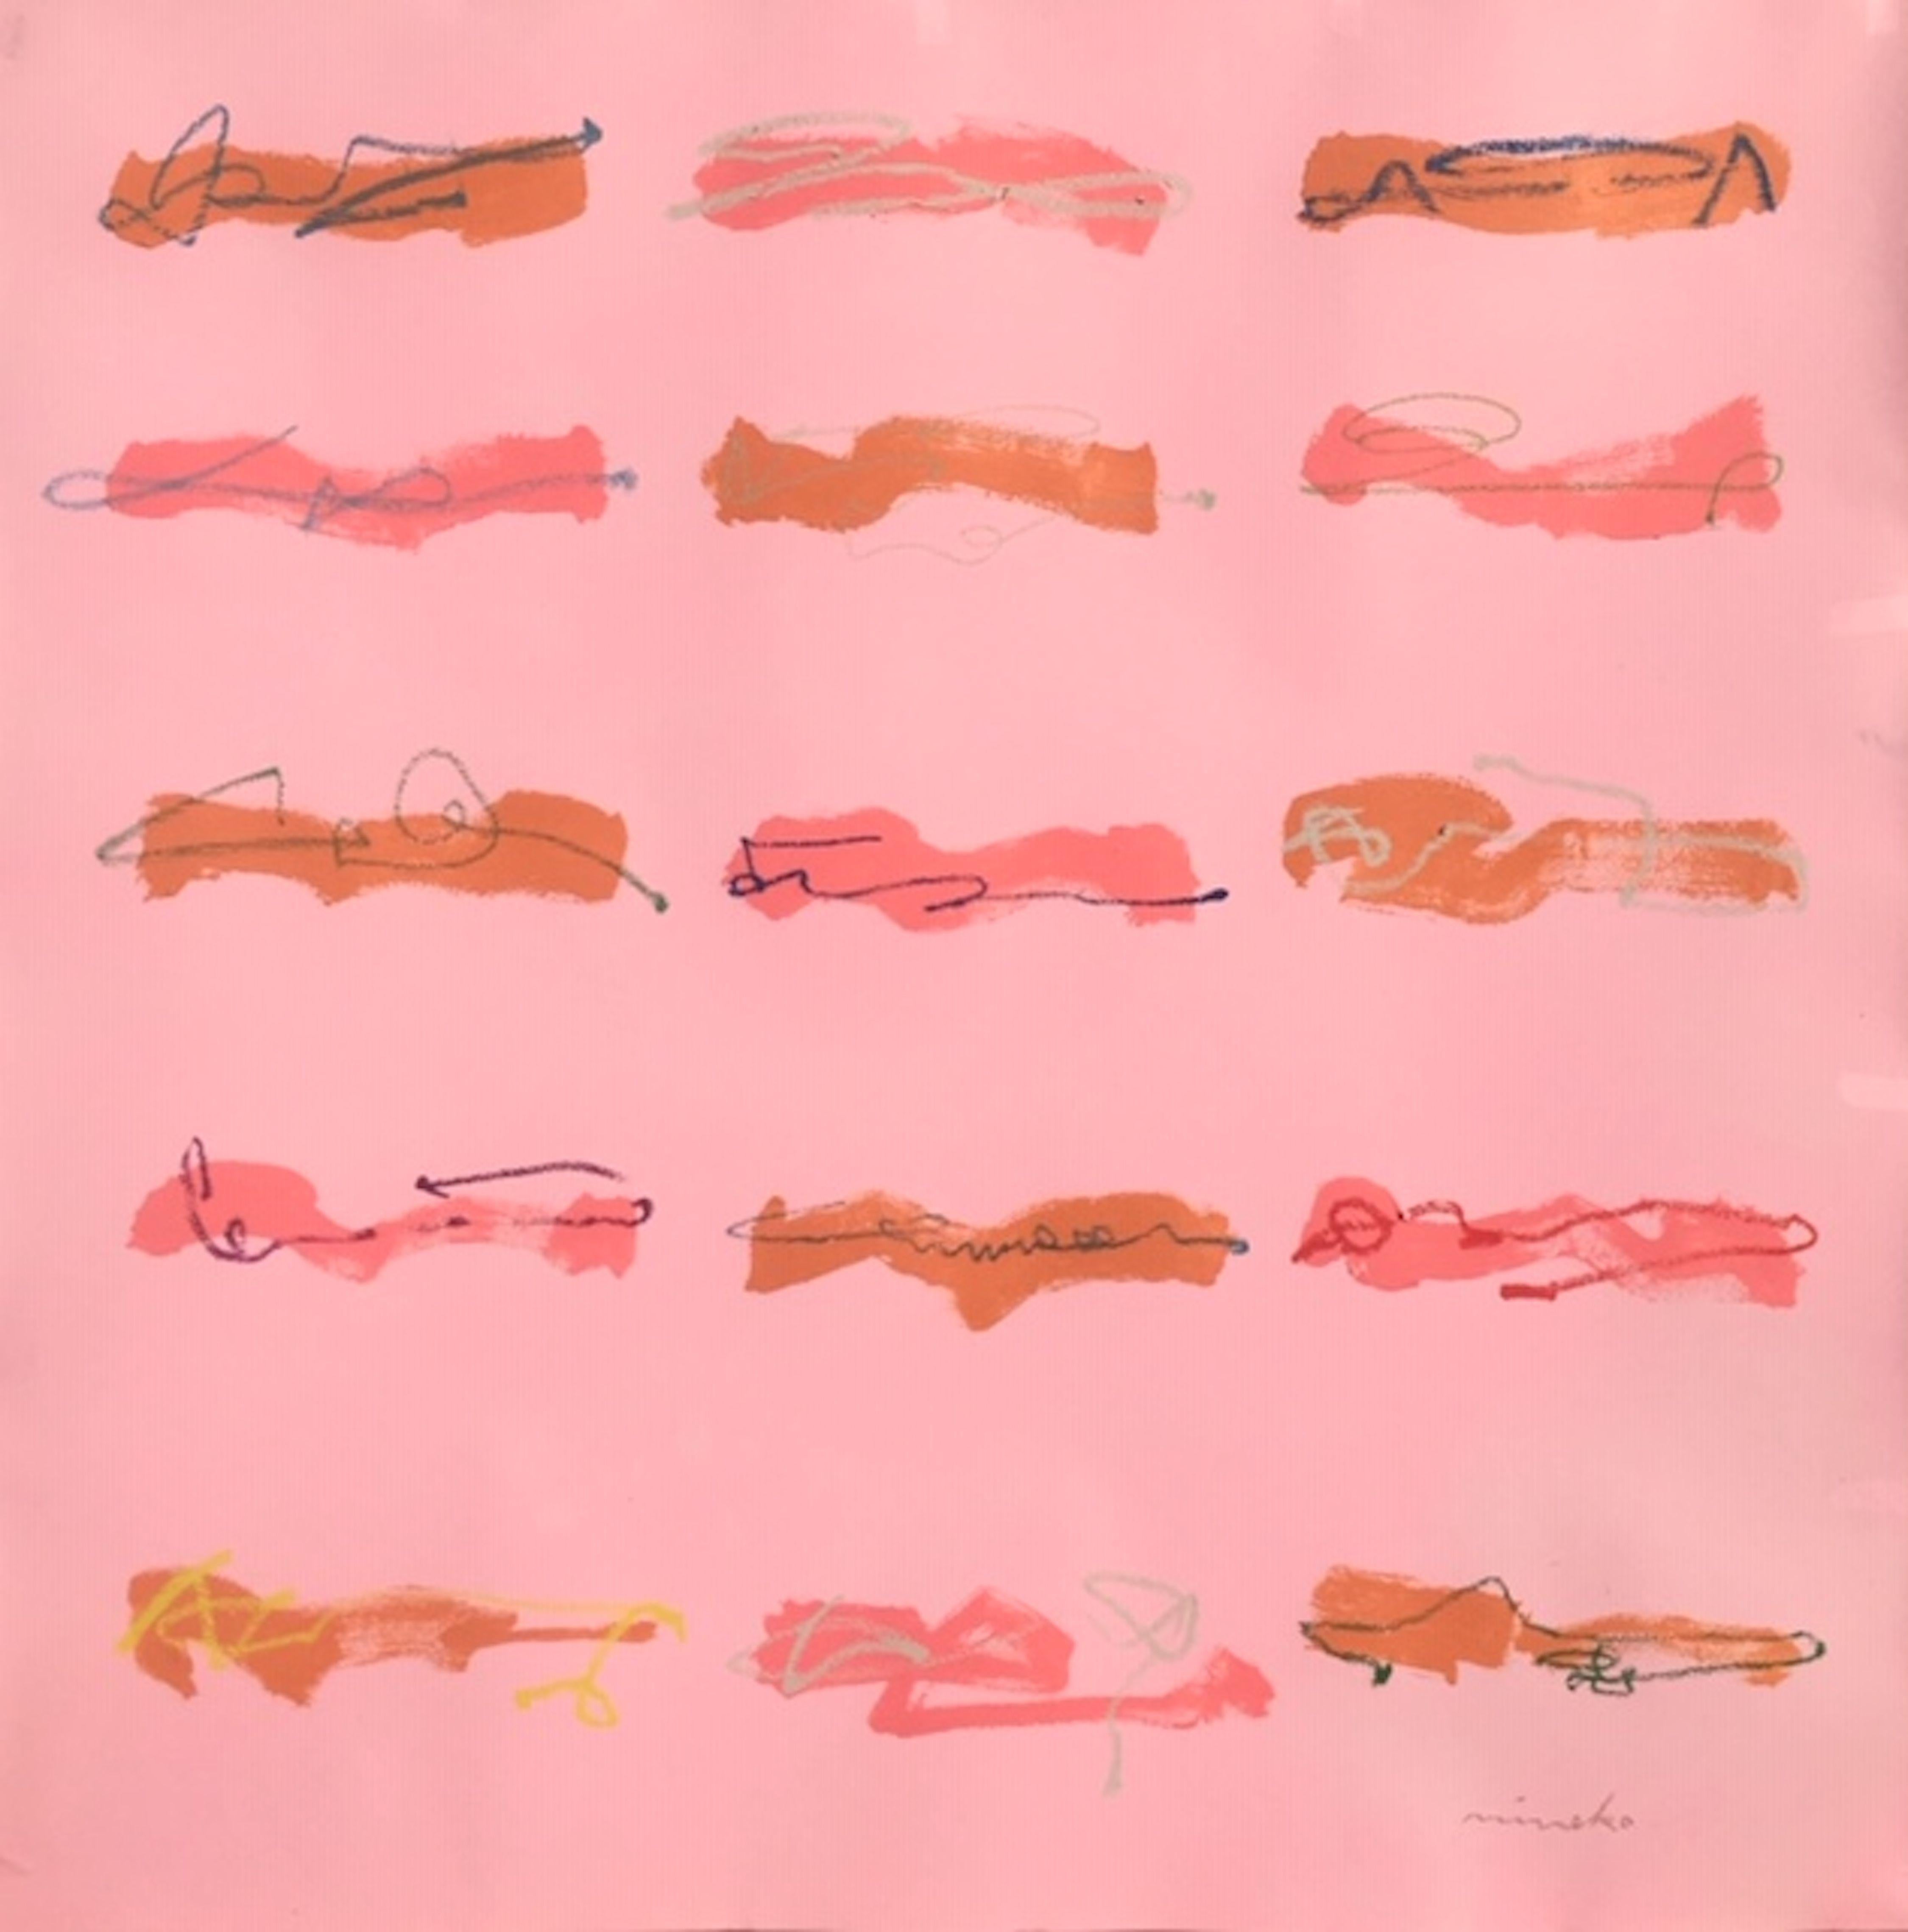 Dessin au trait sur papier rose, technique mixte - Mixed Media Art de Mineko Yoshida